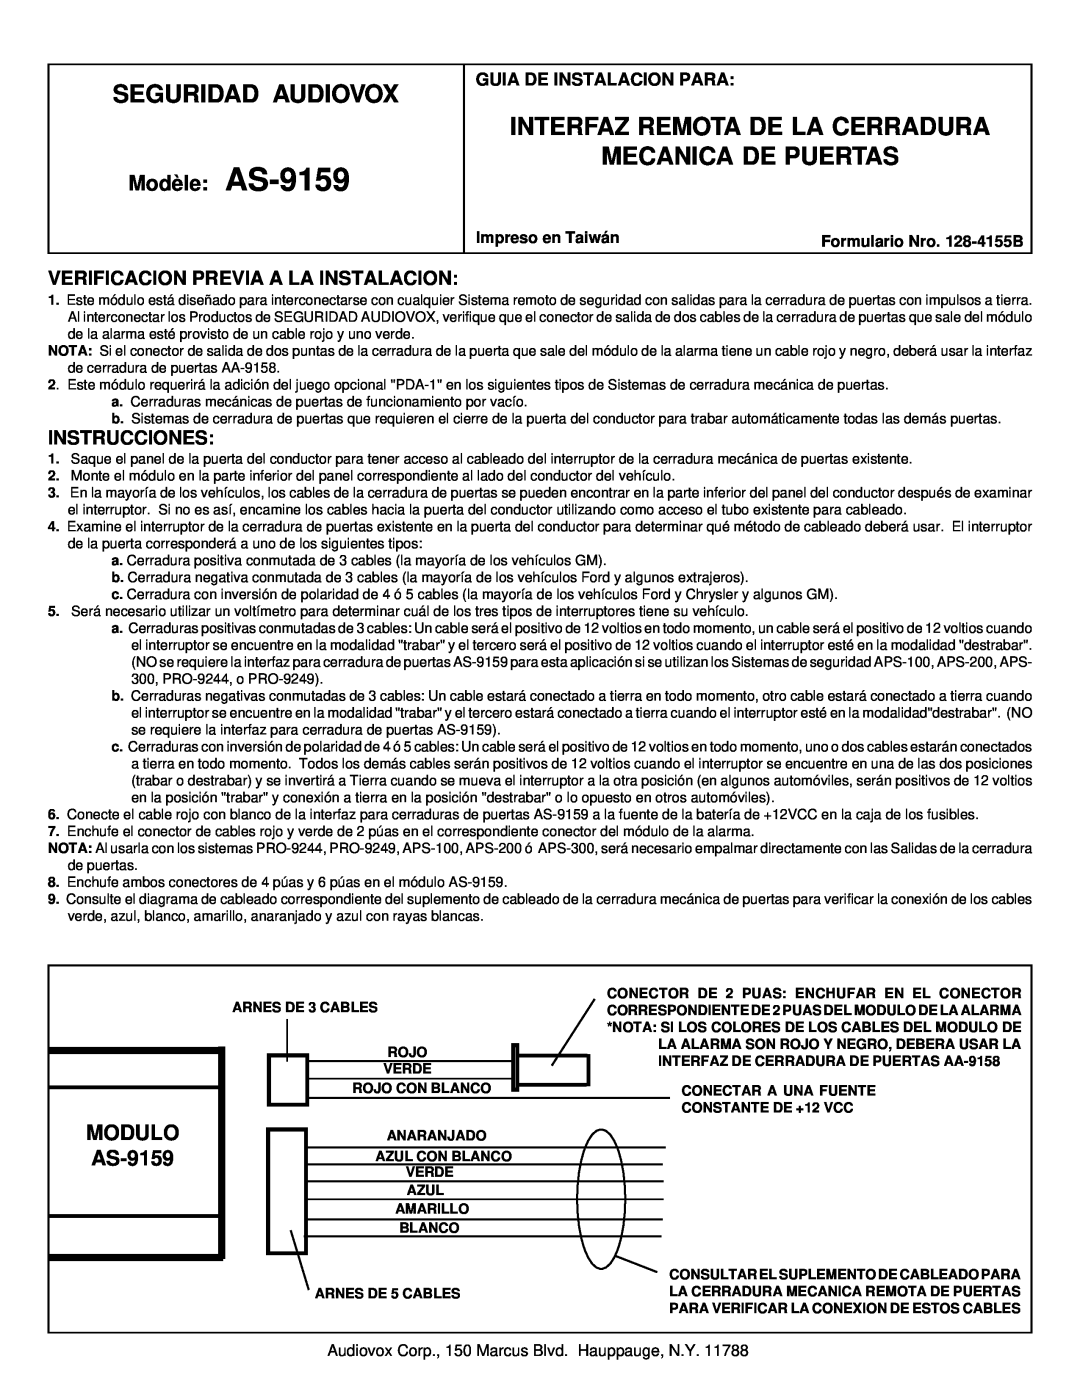 Audiovox manual Seguridad Audiovox, Interfaz Remota De La Cerradura Mecanica De Puertas, MODULO AS-9159, Instrucciones 